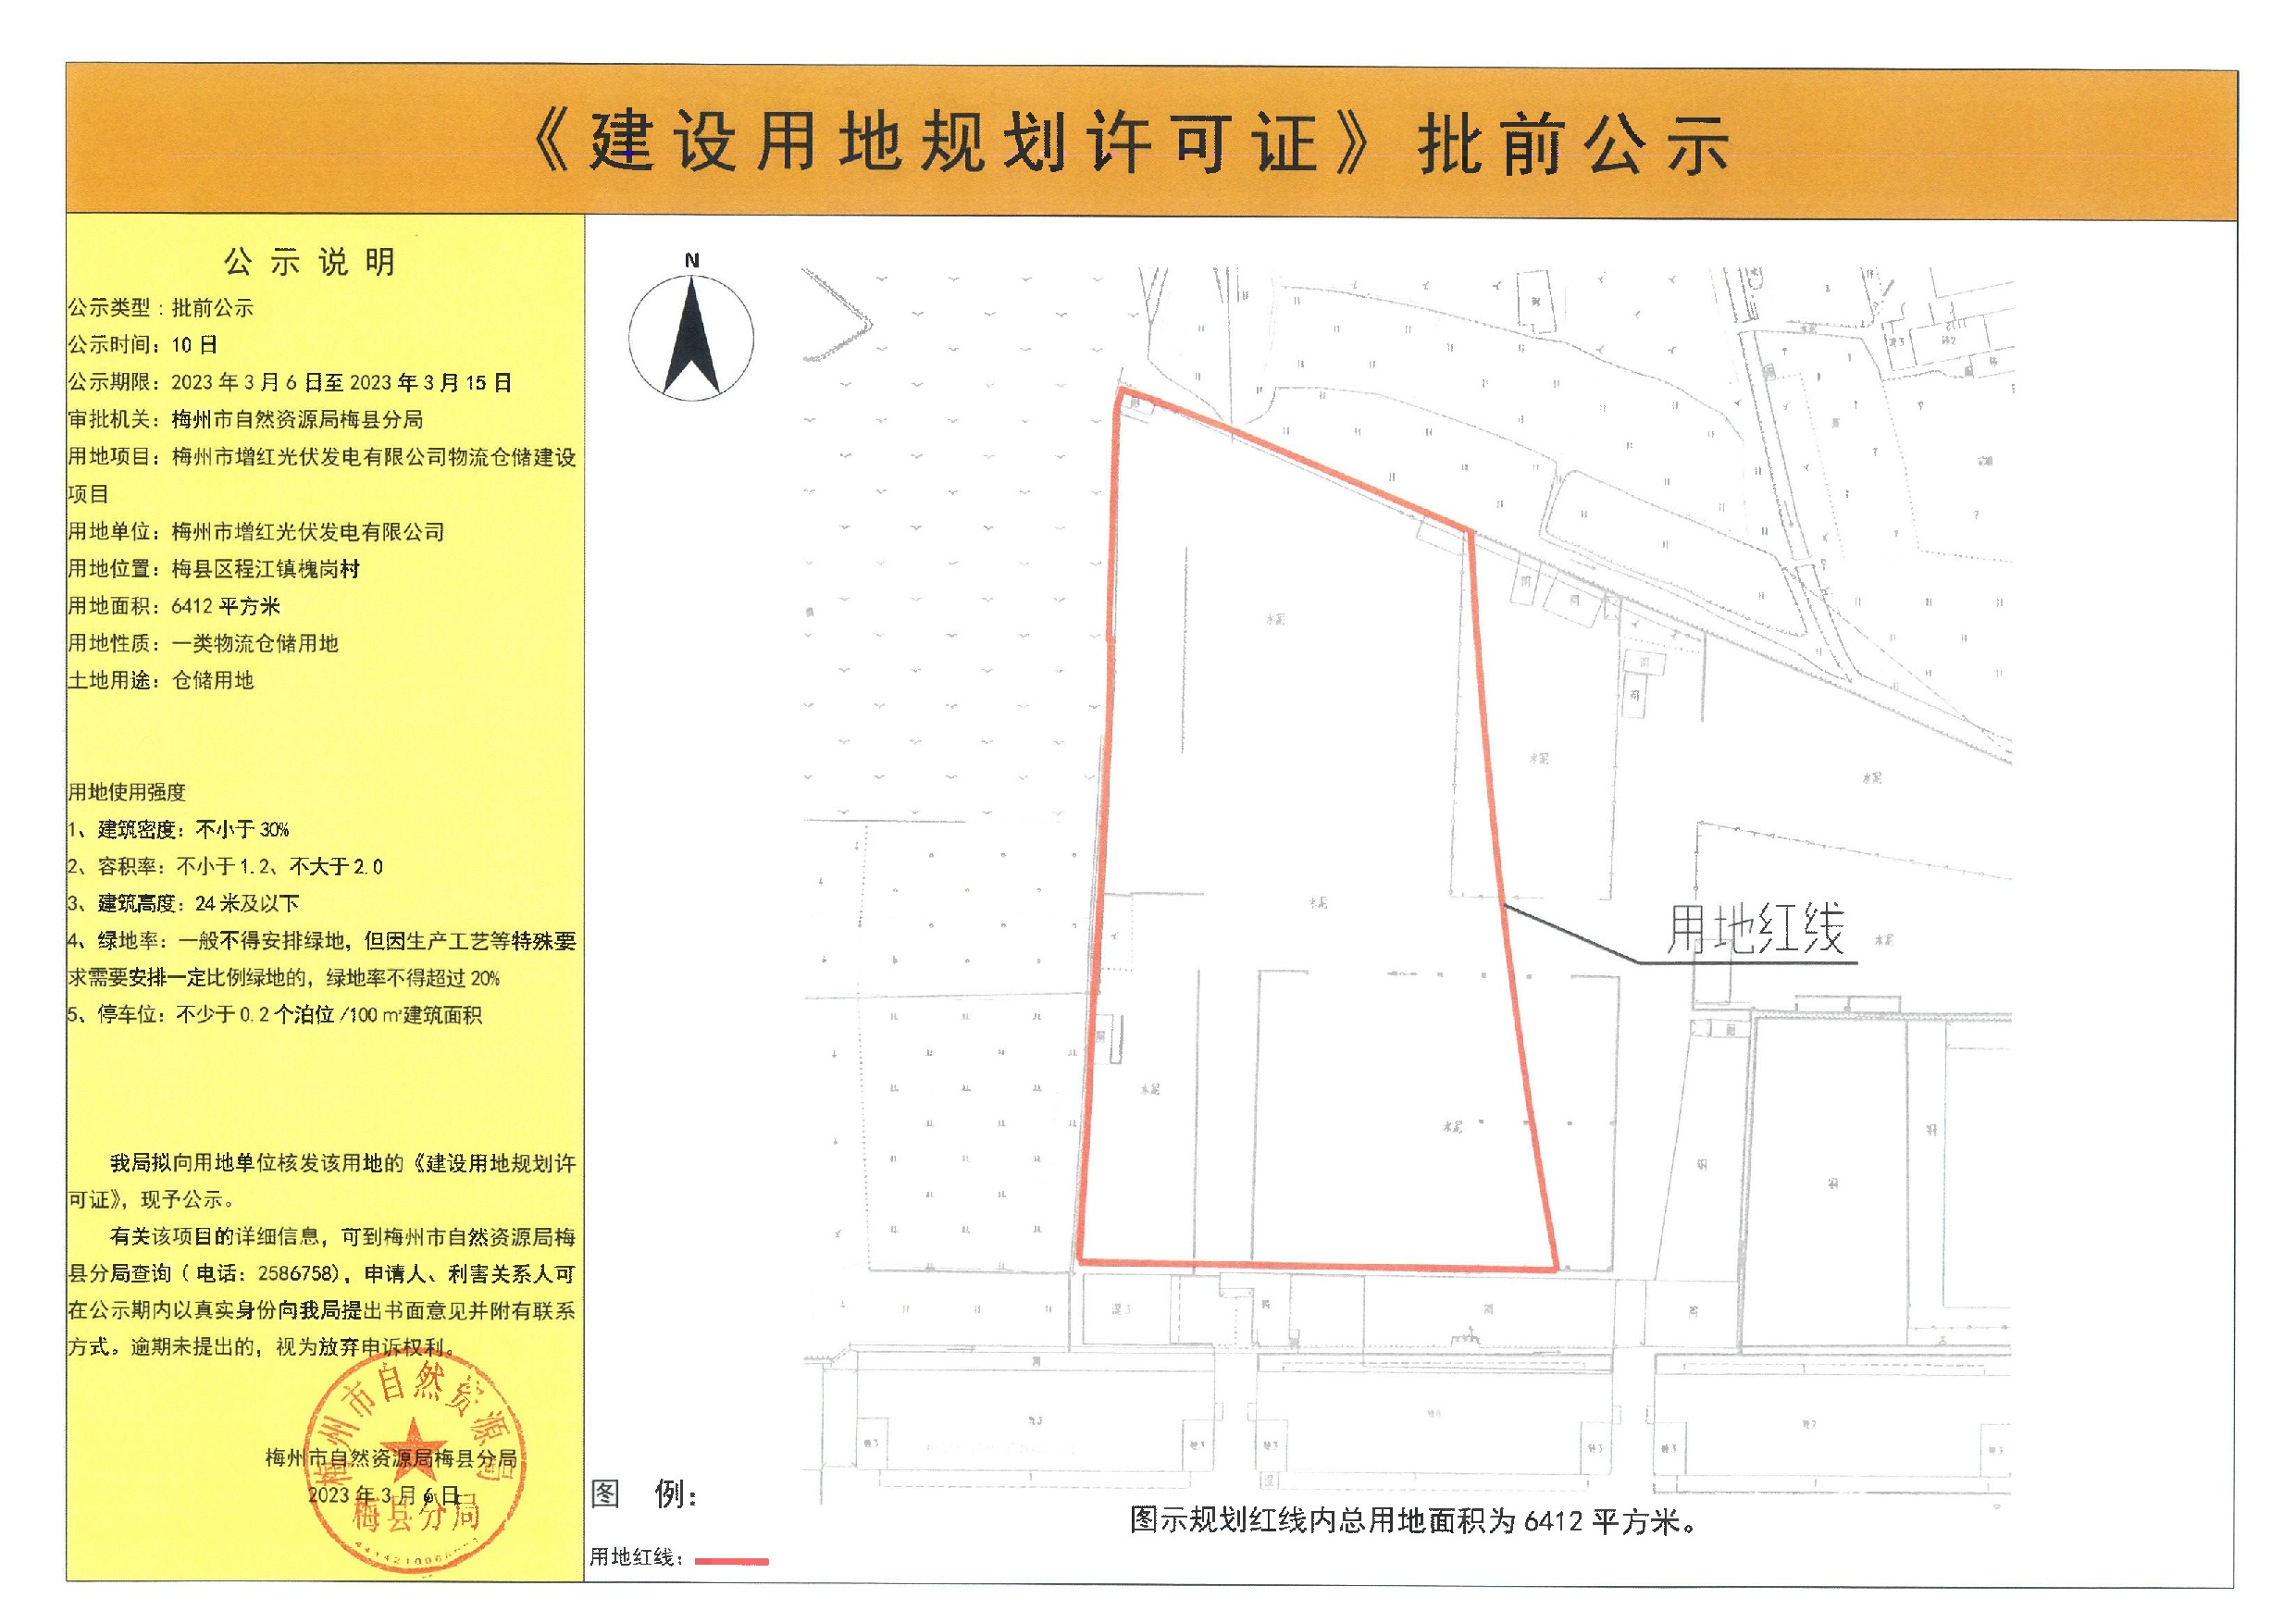 《建设用地规划许可证》批前公示—— 梅州市增红光伏发电有限公司物流仓储建设项目（6412平方米）.jpeg